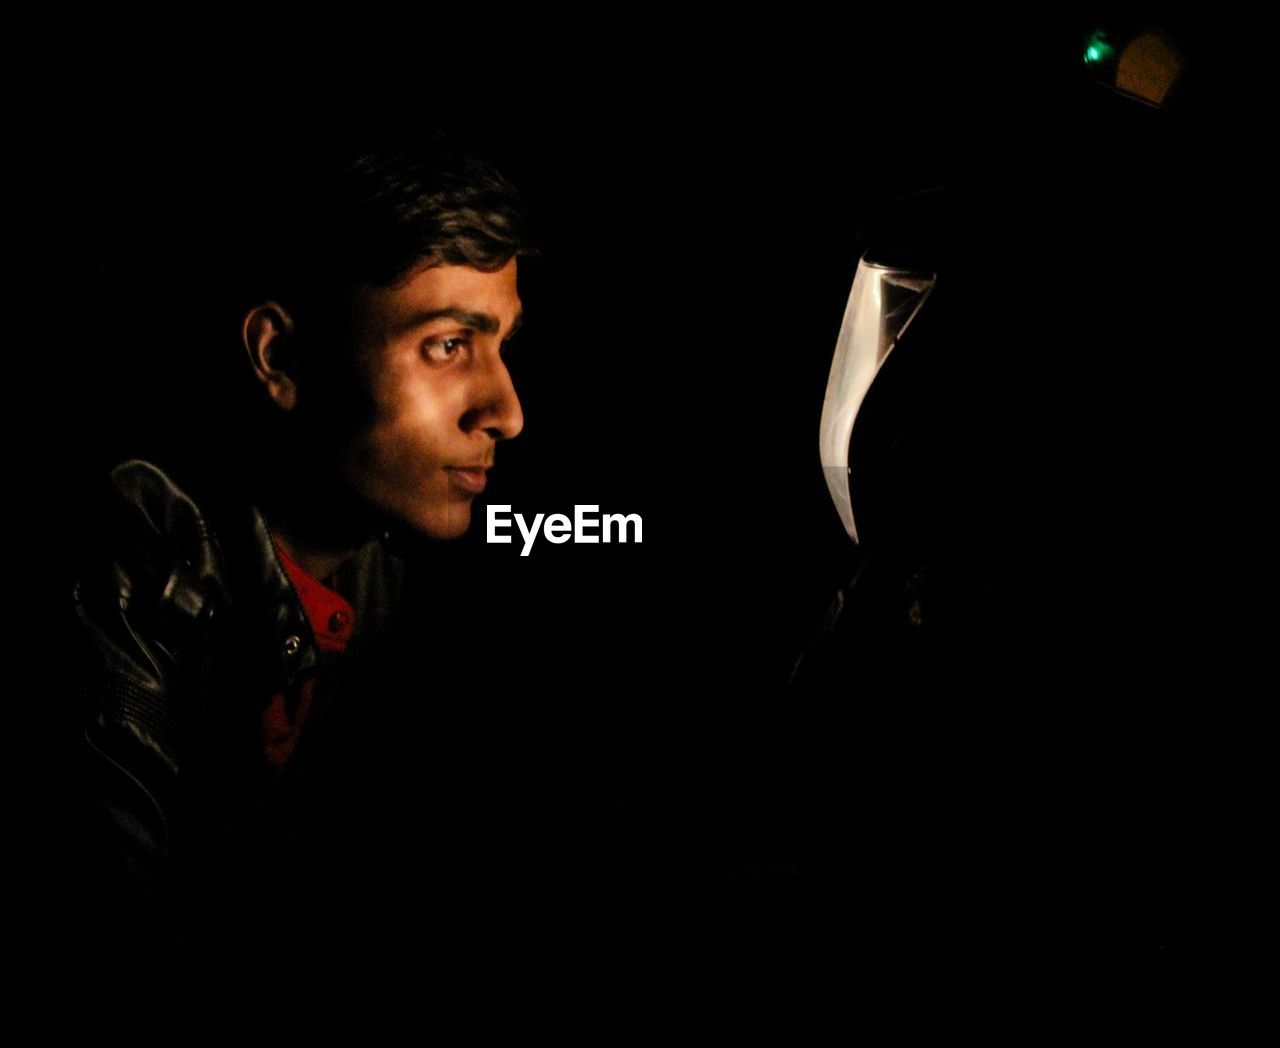 Man looking at illuminated motorcycle headlight in dark